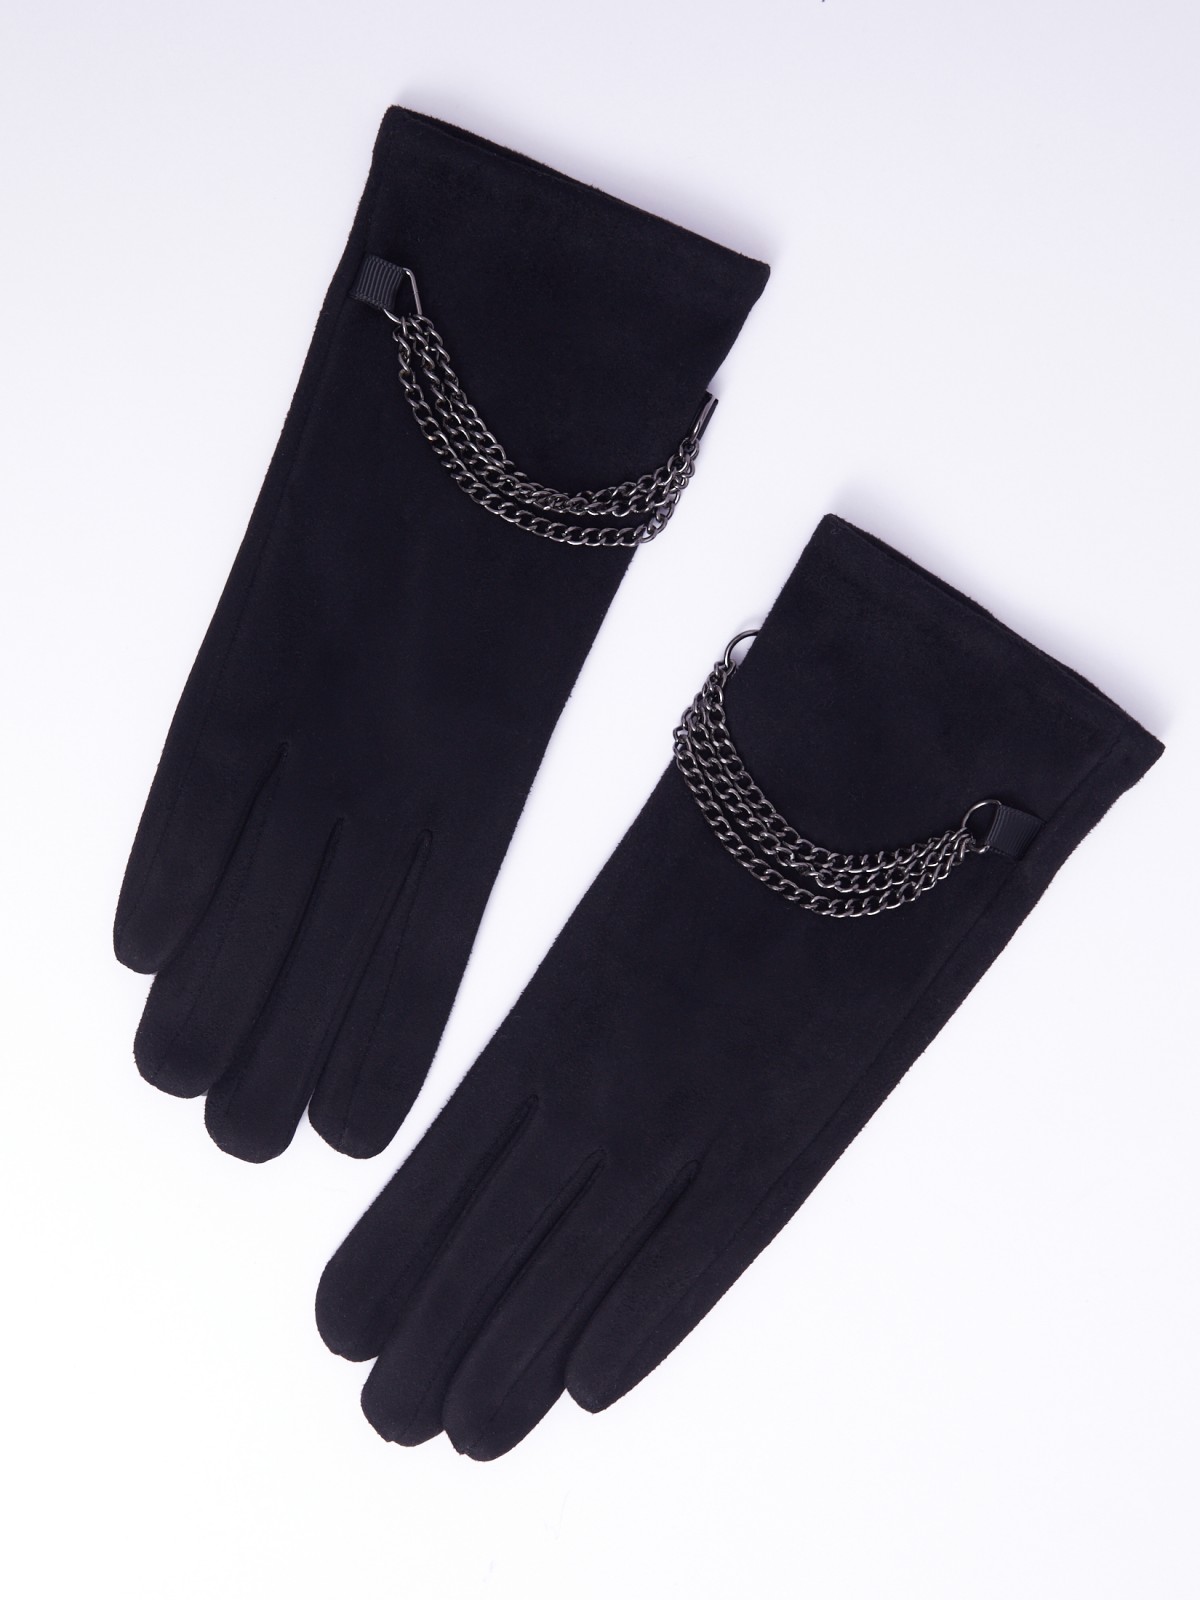 Утеплённые текстильные перчатки с функцией Touch Screen zolla 023339659035, цвет черный, размер S